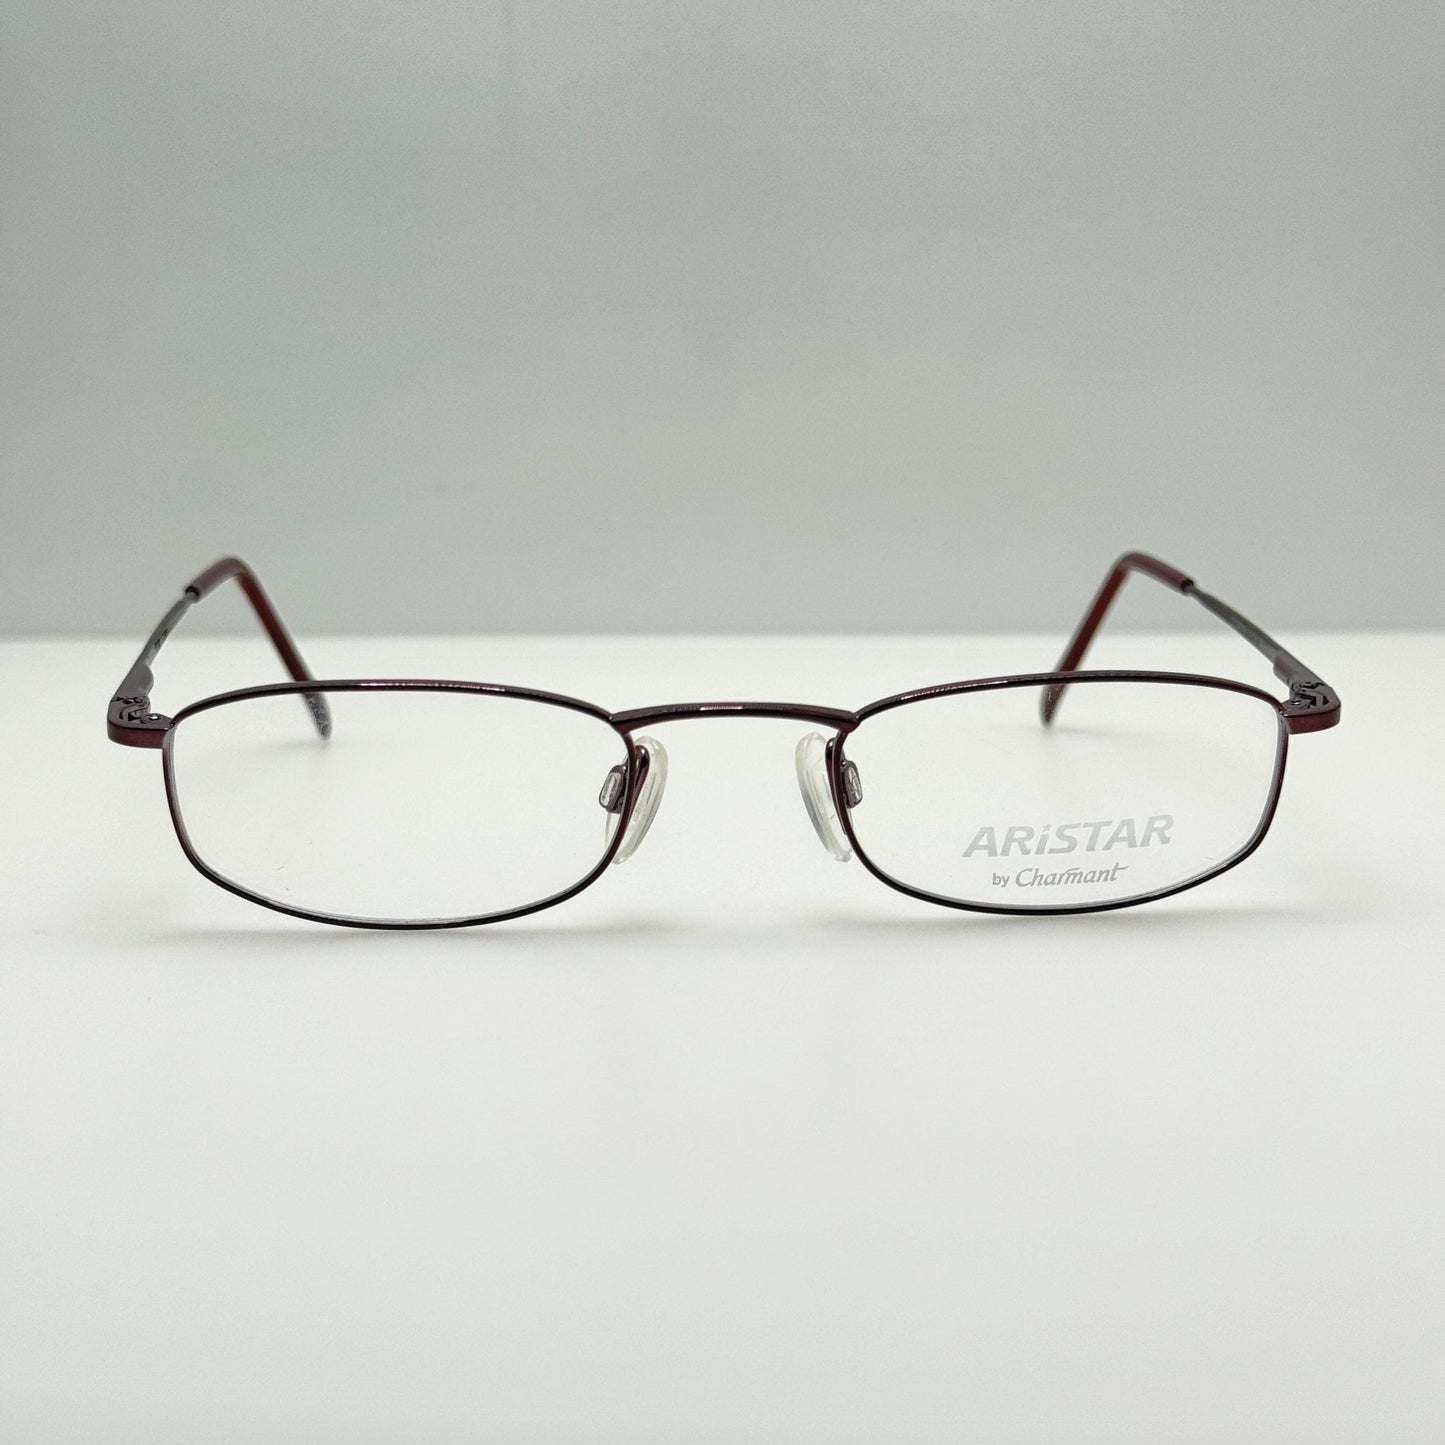 Aristar Eyeglasses Eye Glasses Frames 6653 046 48-21-140